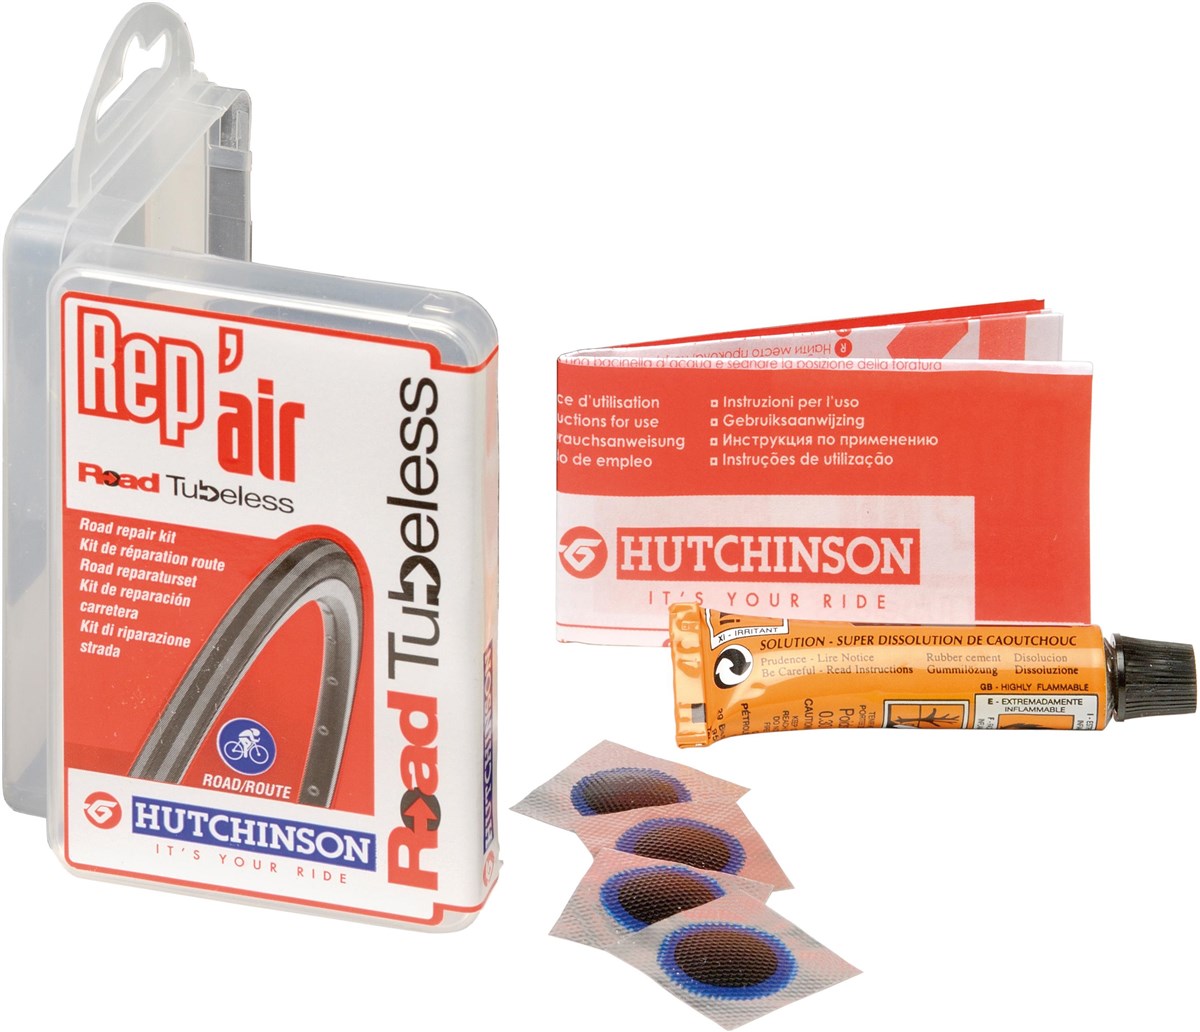 Hutchinson Rep Air Tubeless Repair Kit product image